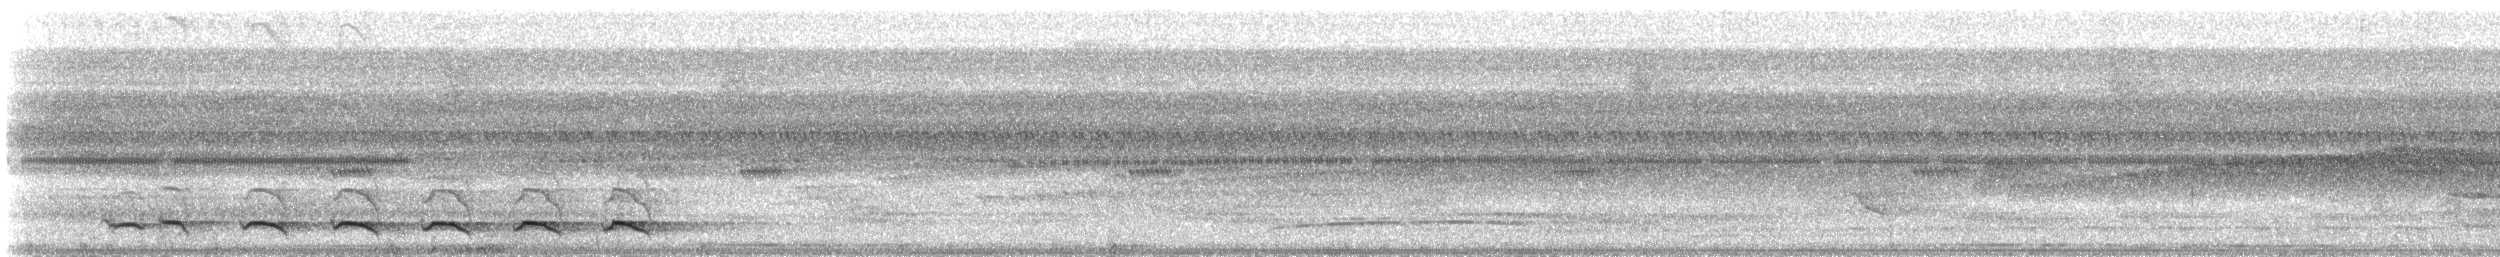 Ошейниковый трогон [группа collaris] - ML25848651